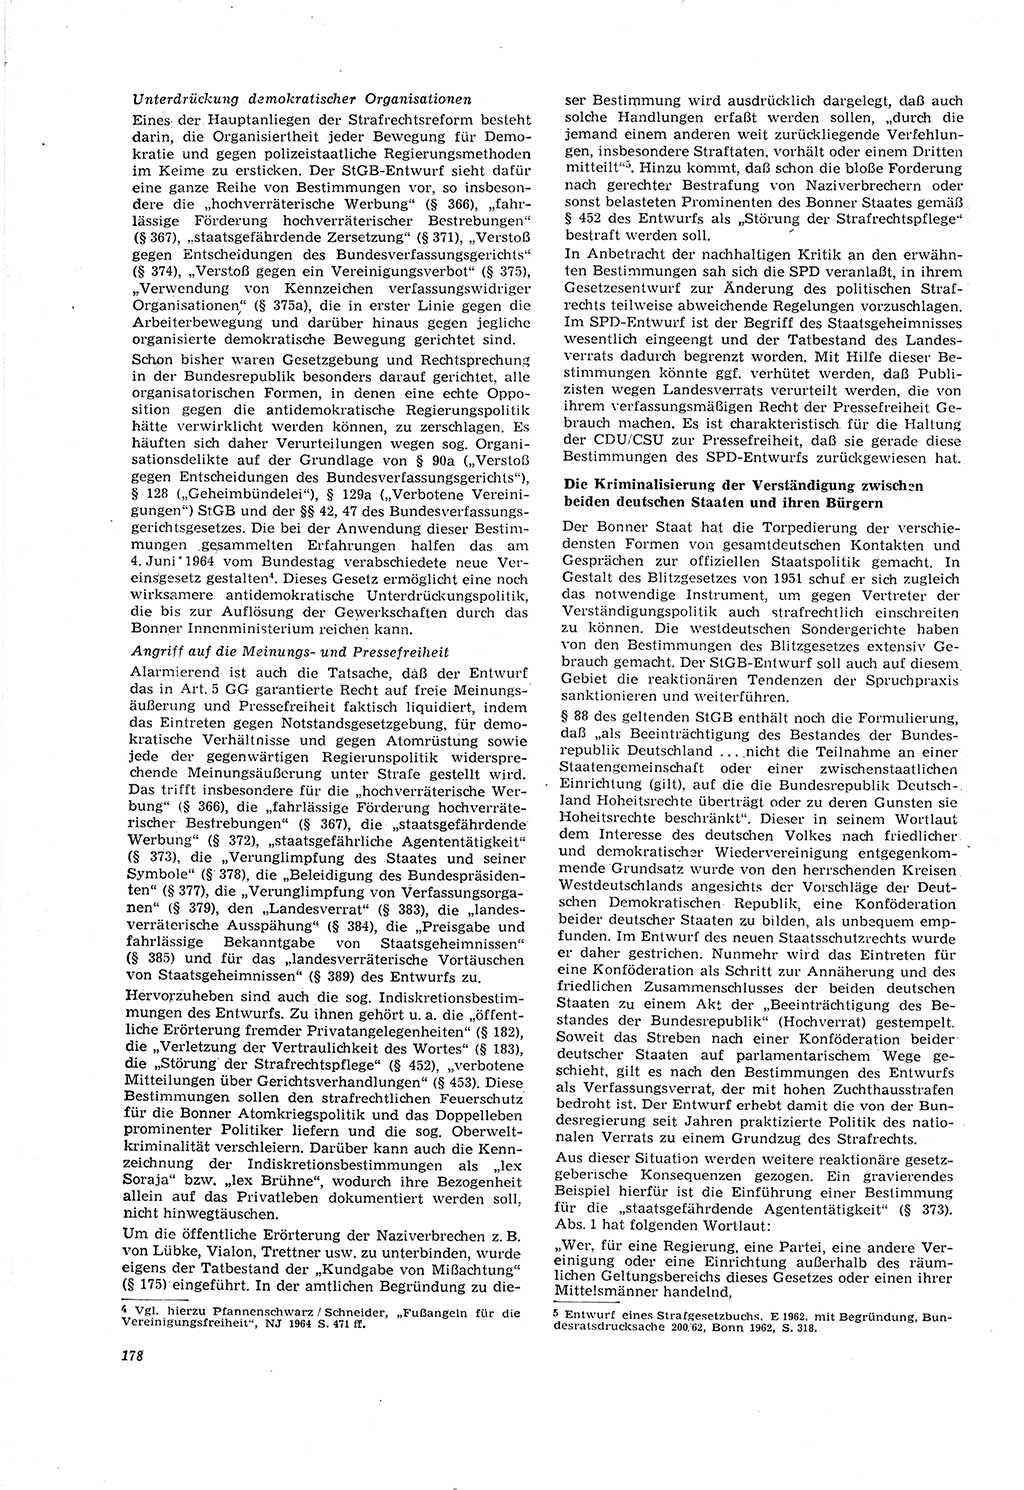 Neue Justiz (NJ), Zeitschrift für Recht und Rechtswissenschaft [Deutsche Demokratische Republik (DDR)], 20. Jahrgang 1966, Seite 178 (NJ DDR 1966, S. 178)